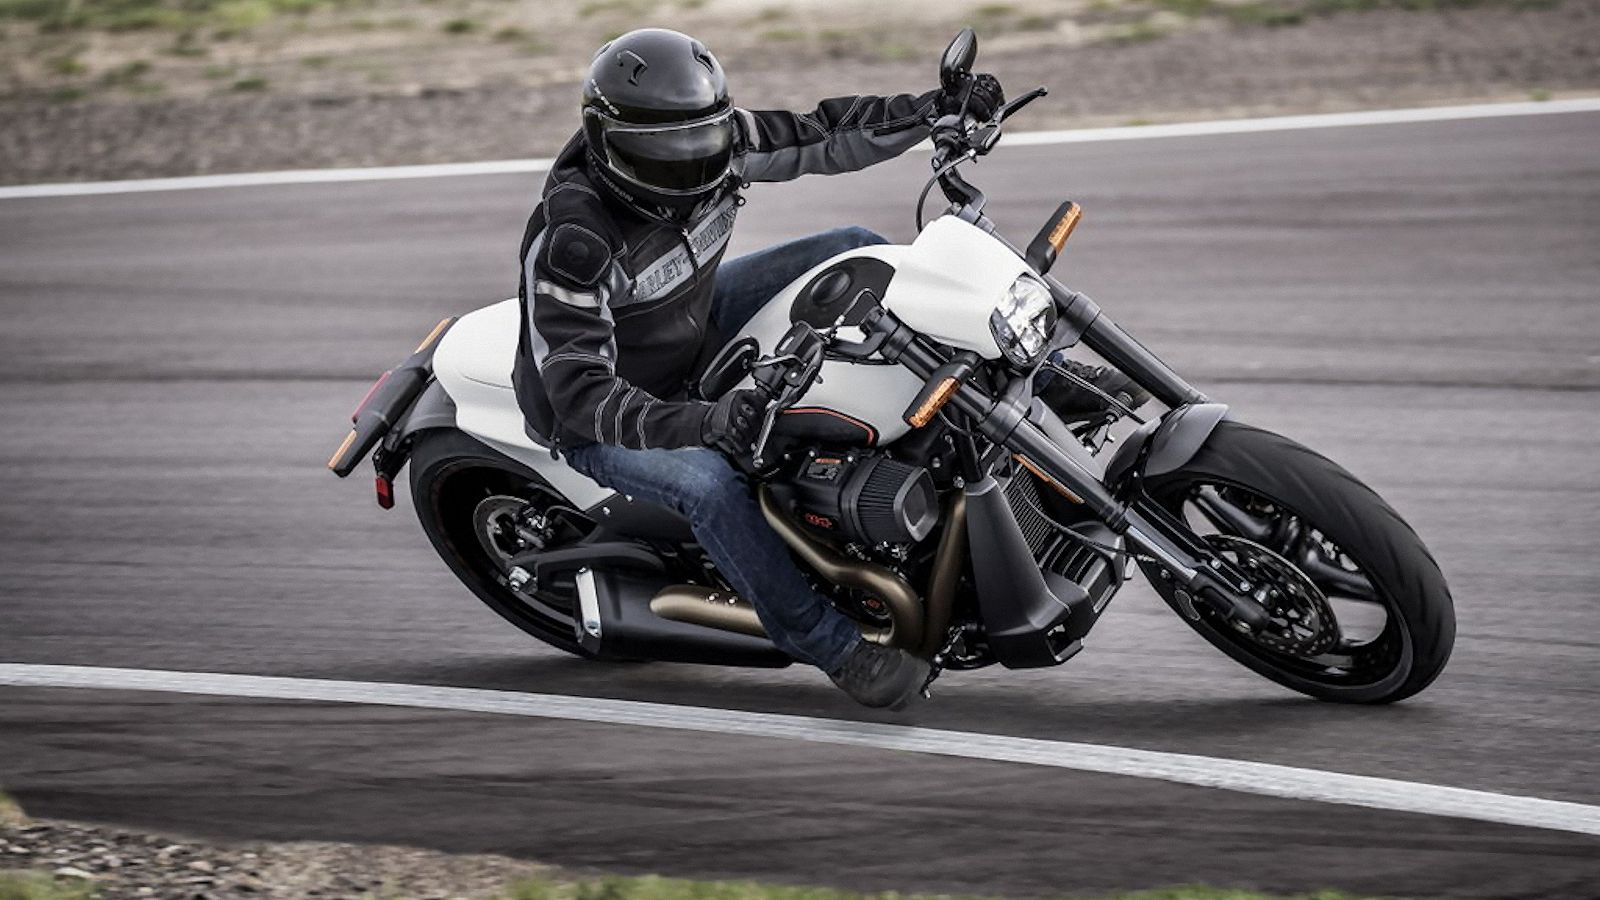 Harley-Davidson FXDR 114 in action.